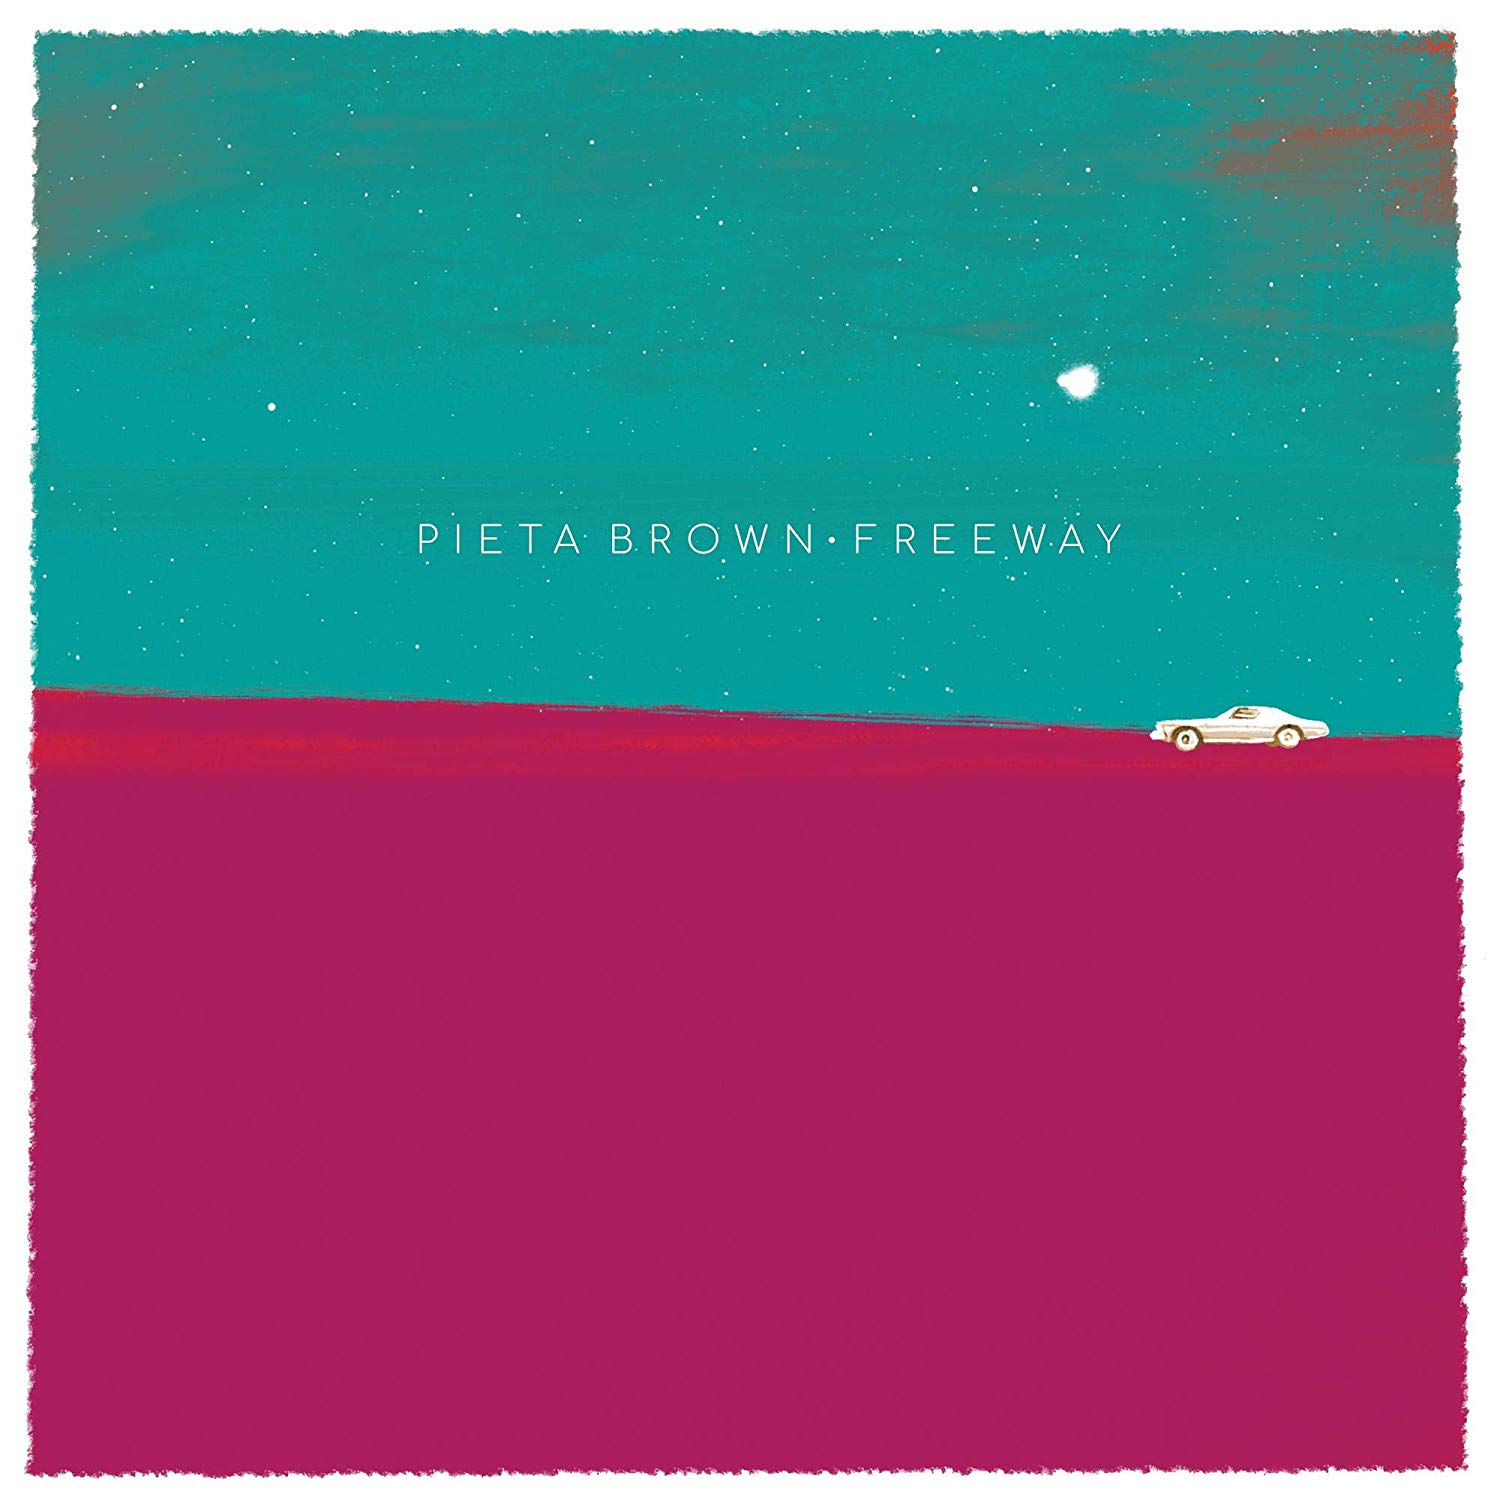 Pieta Brown: Freeway